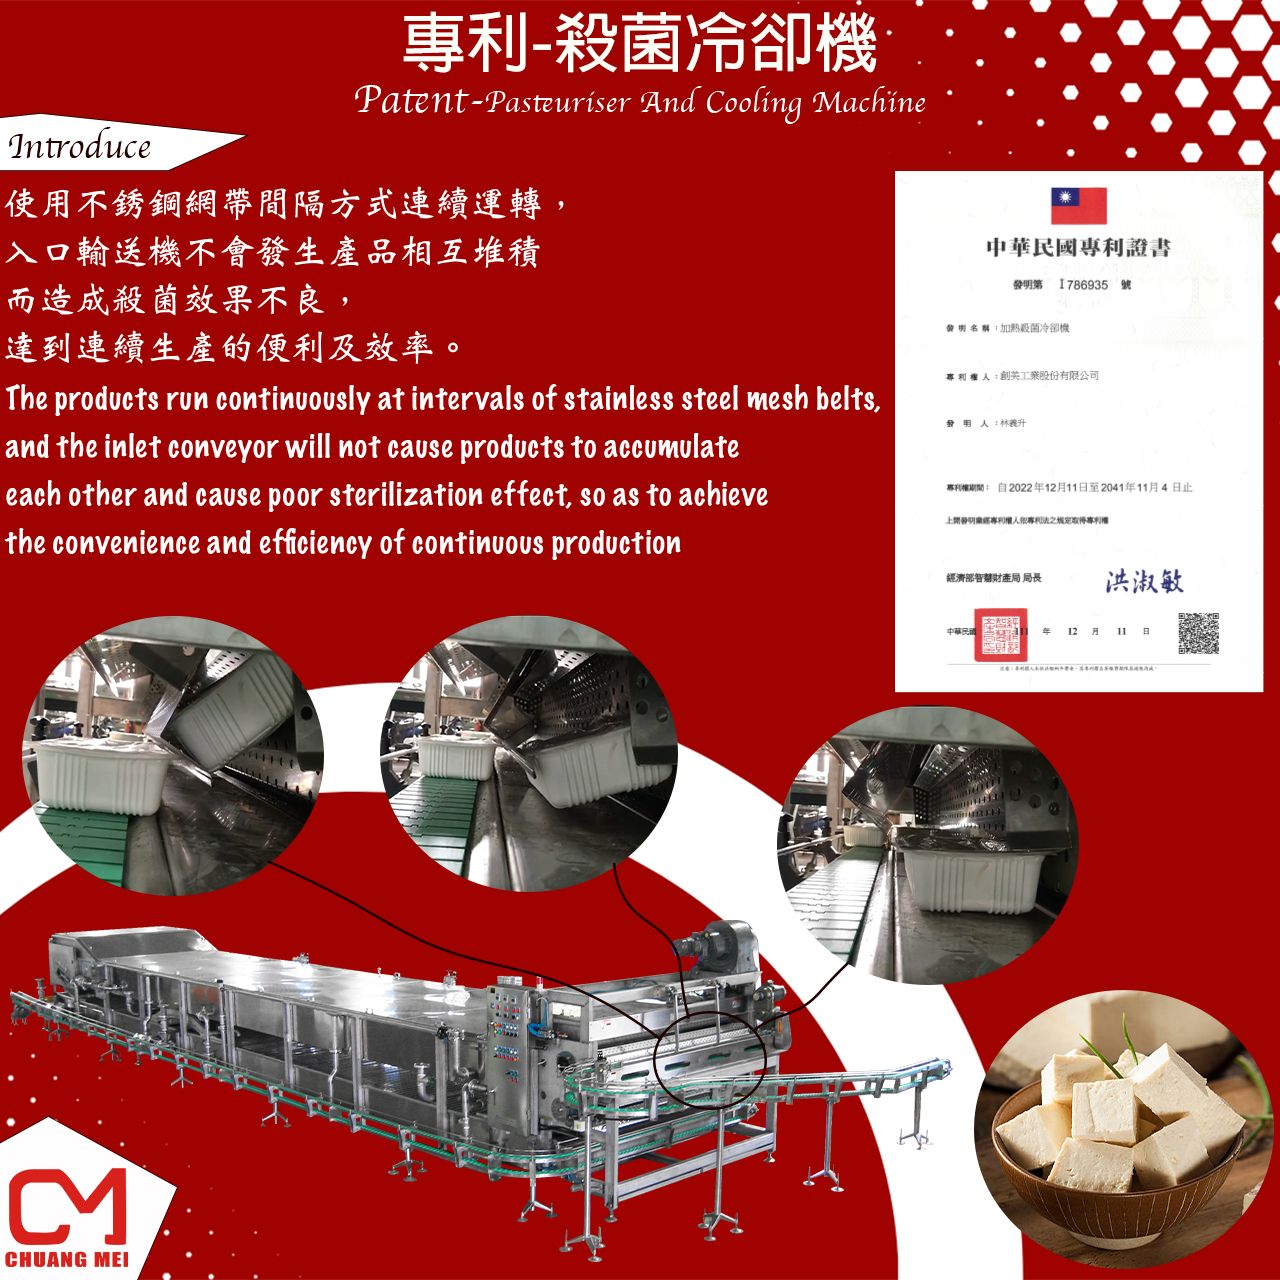 La pasteurizadora y máquina de enfriamiento diseñada y desarrollada por CHUANG MEI.